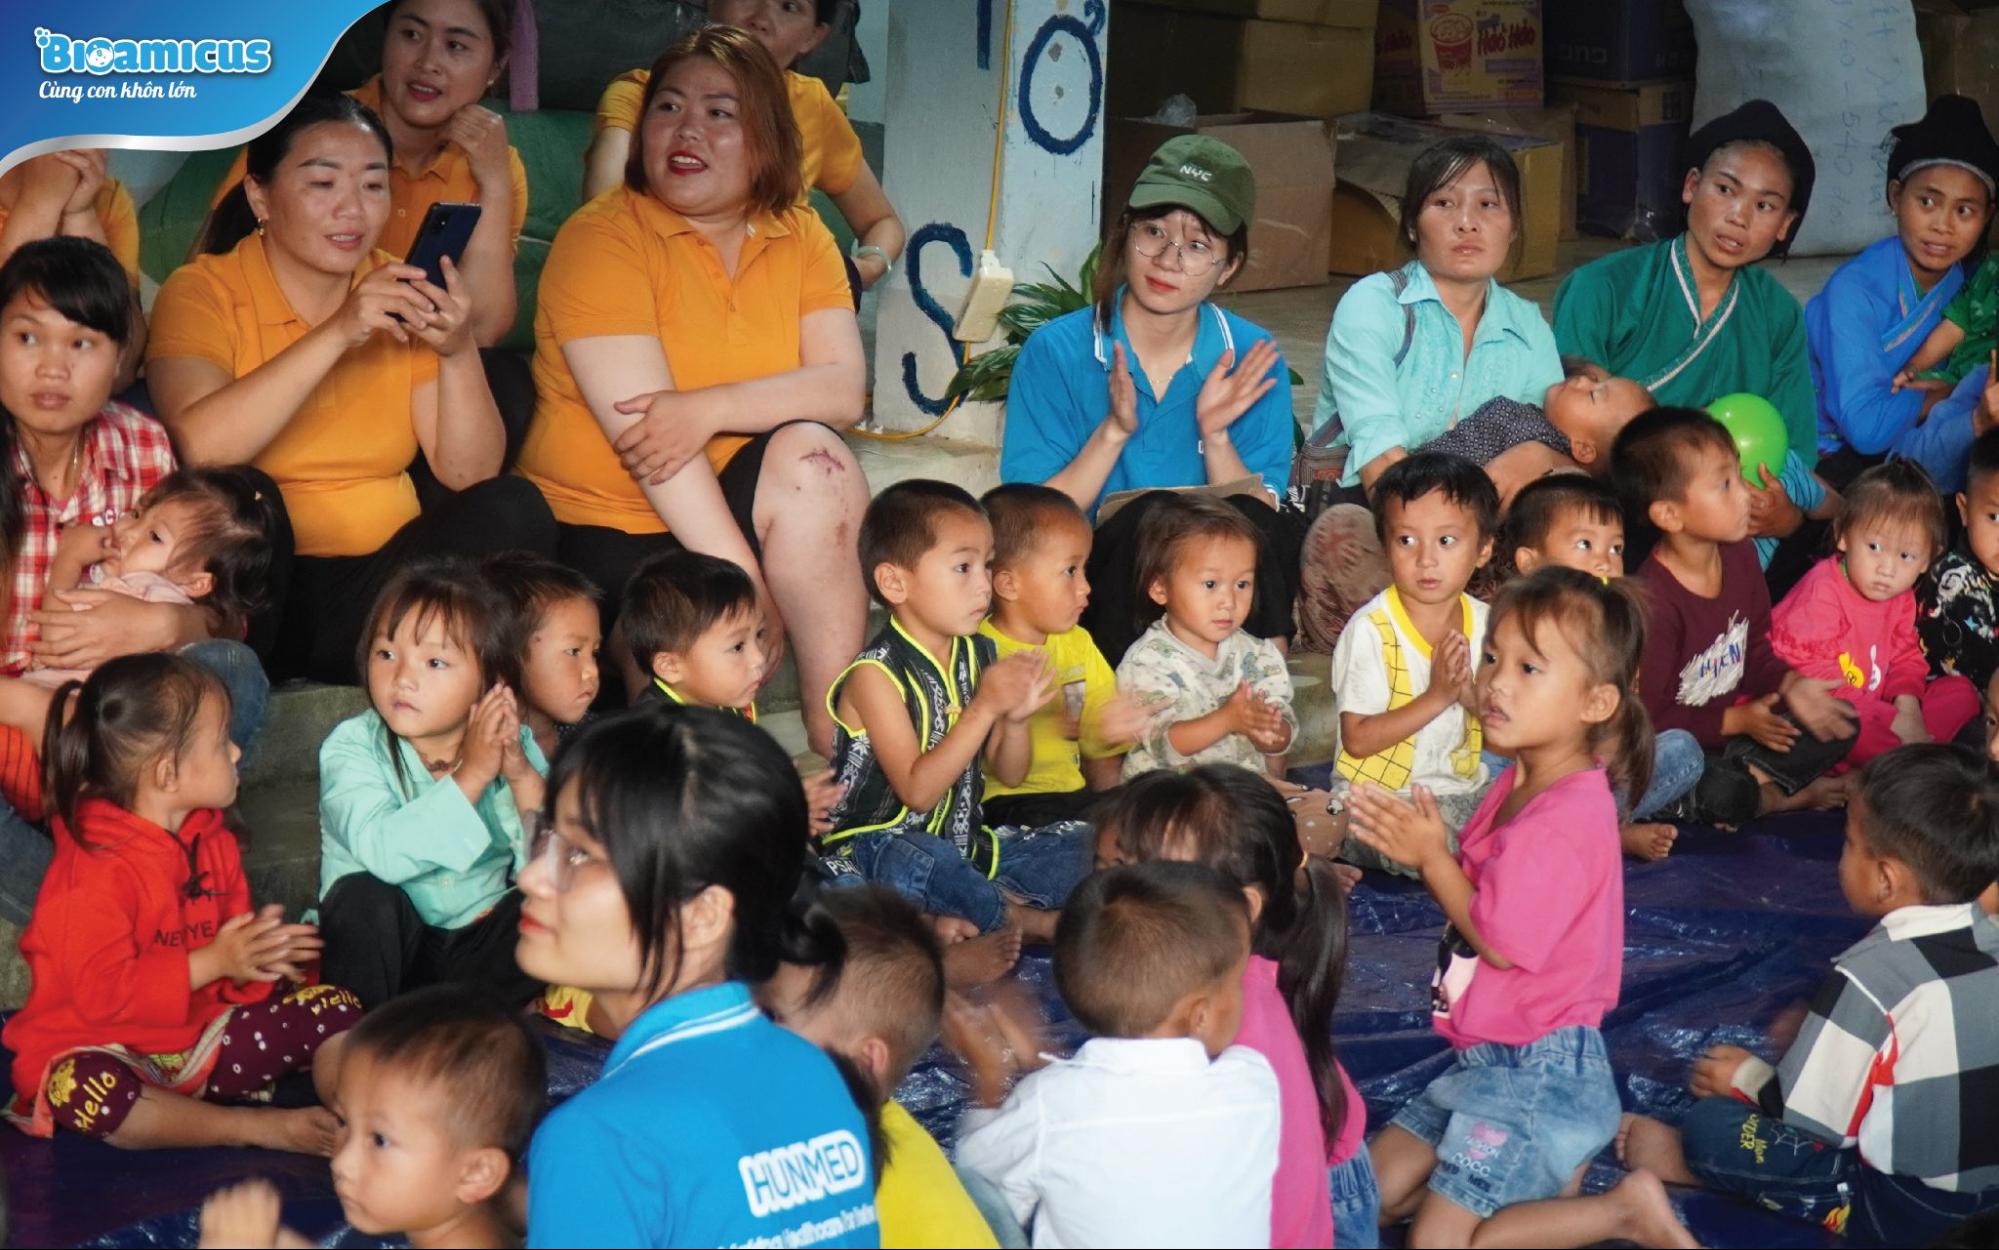 Hành trình mang Trăng của BioAmicus đến với trẻ em vùng cao Hà Giang